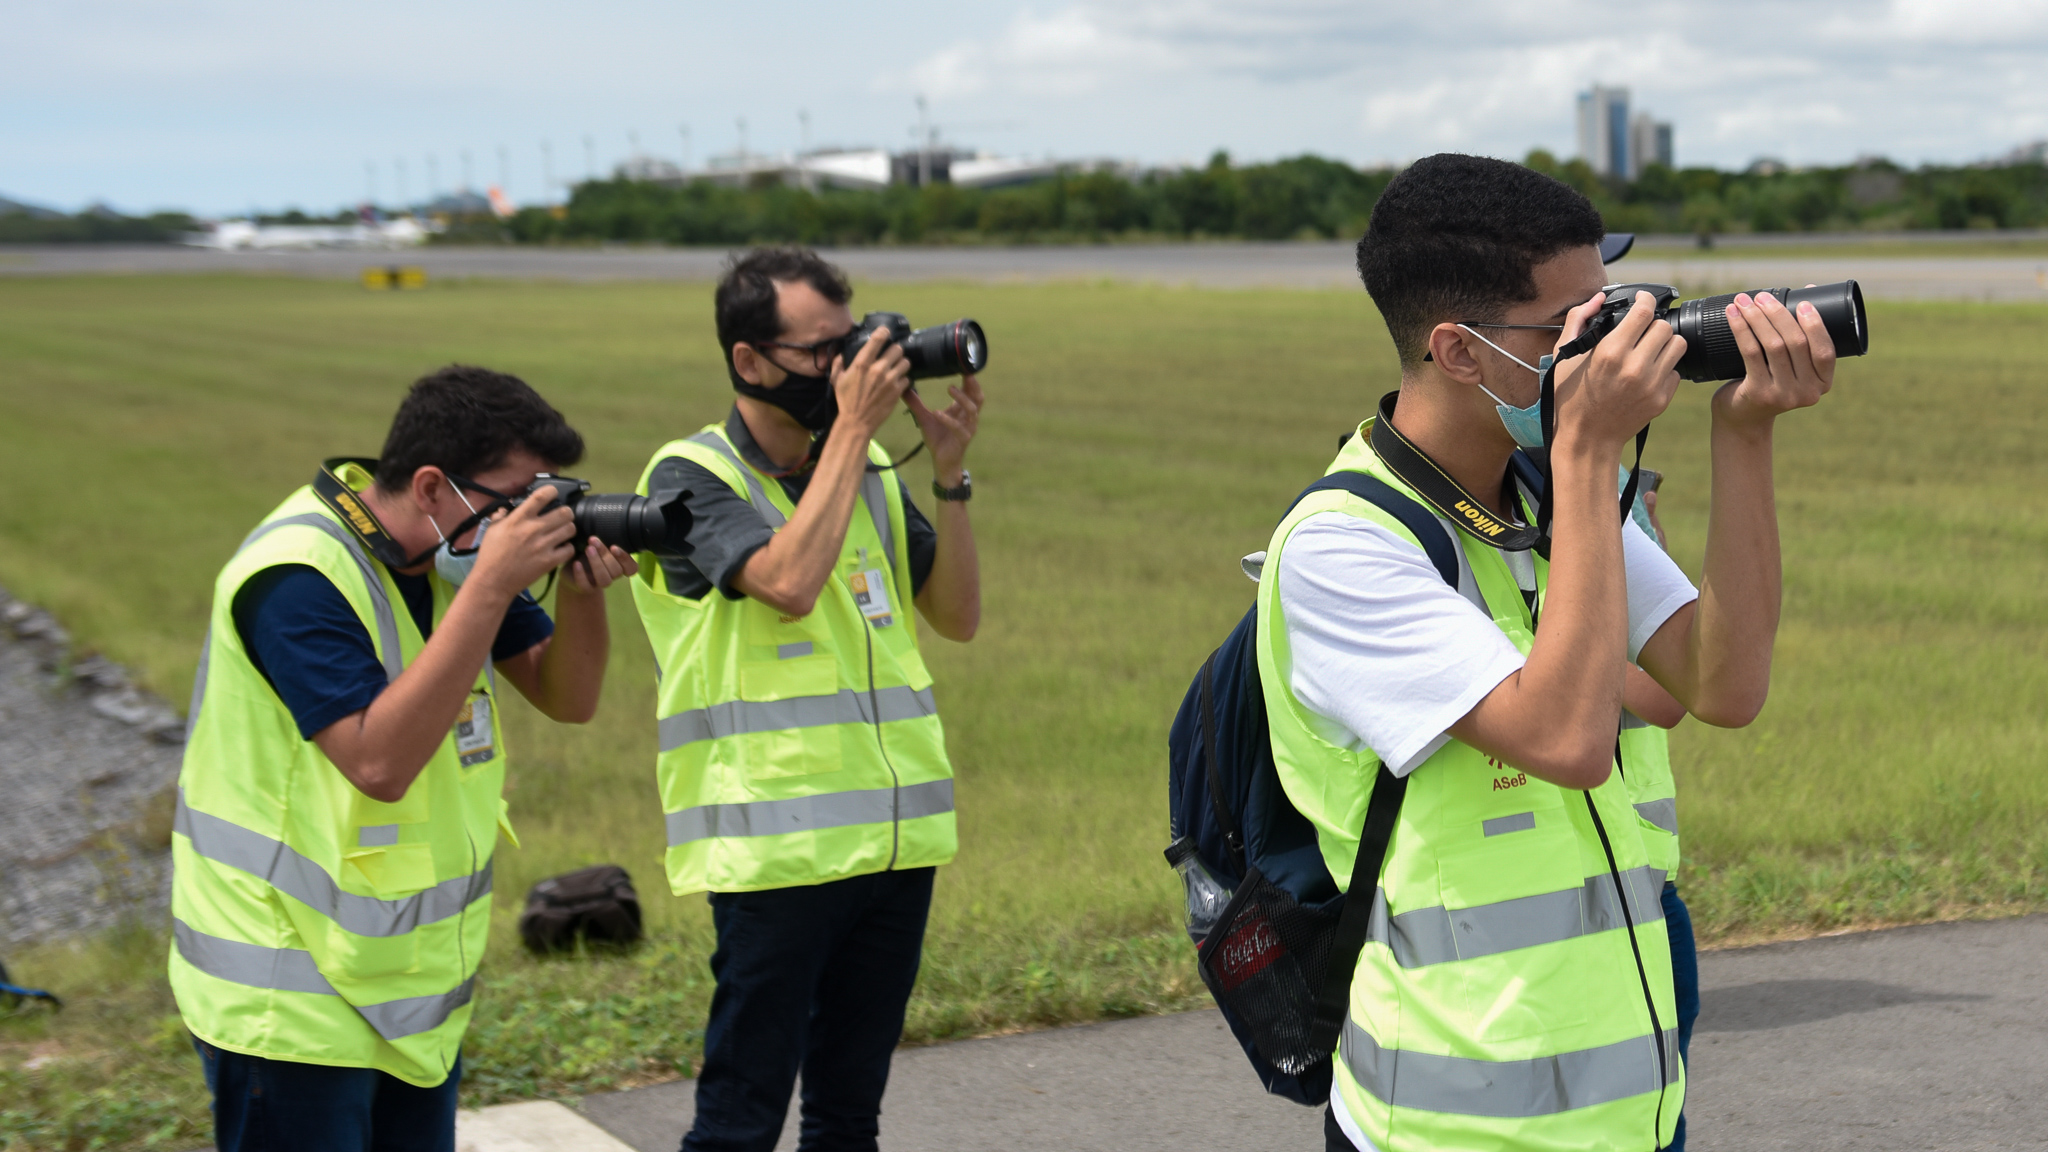  A atividade é voltada aos amantes da fotografia de aviação. Os spotters, como são conhecidos, irão acessar espaços privilegiados do terminal, inclusive o pátio, para fotografar as aeronaves de um ângulo diferente e com mais proximidade.